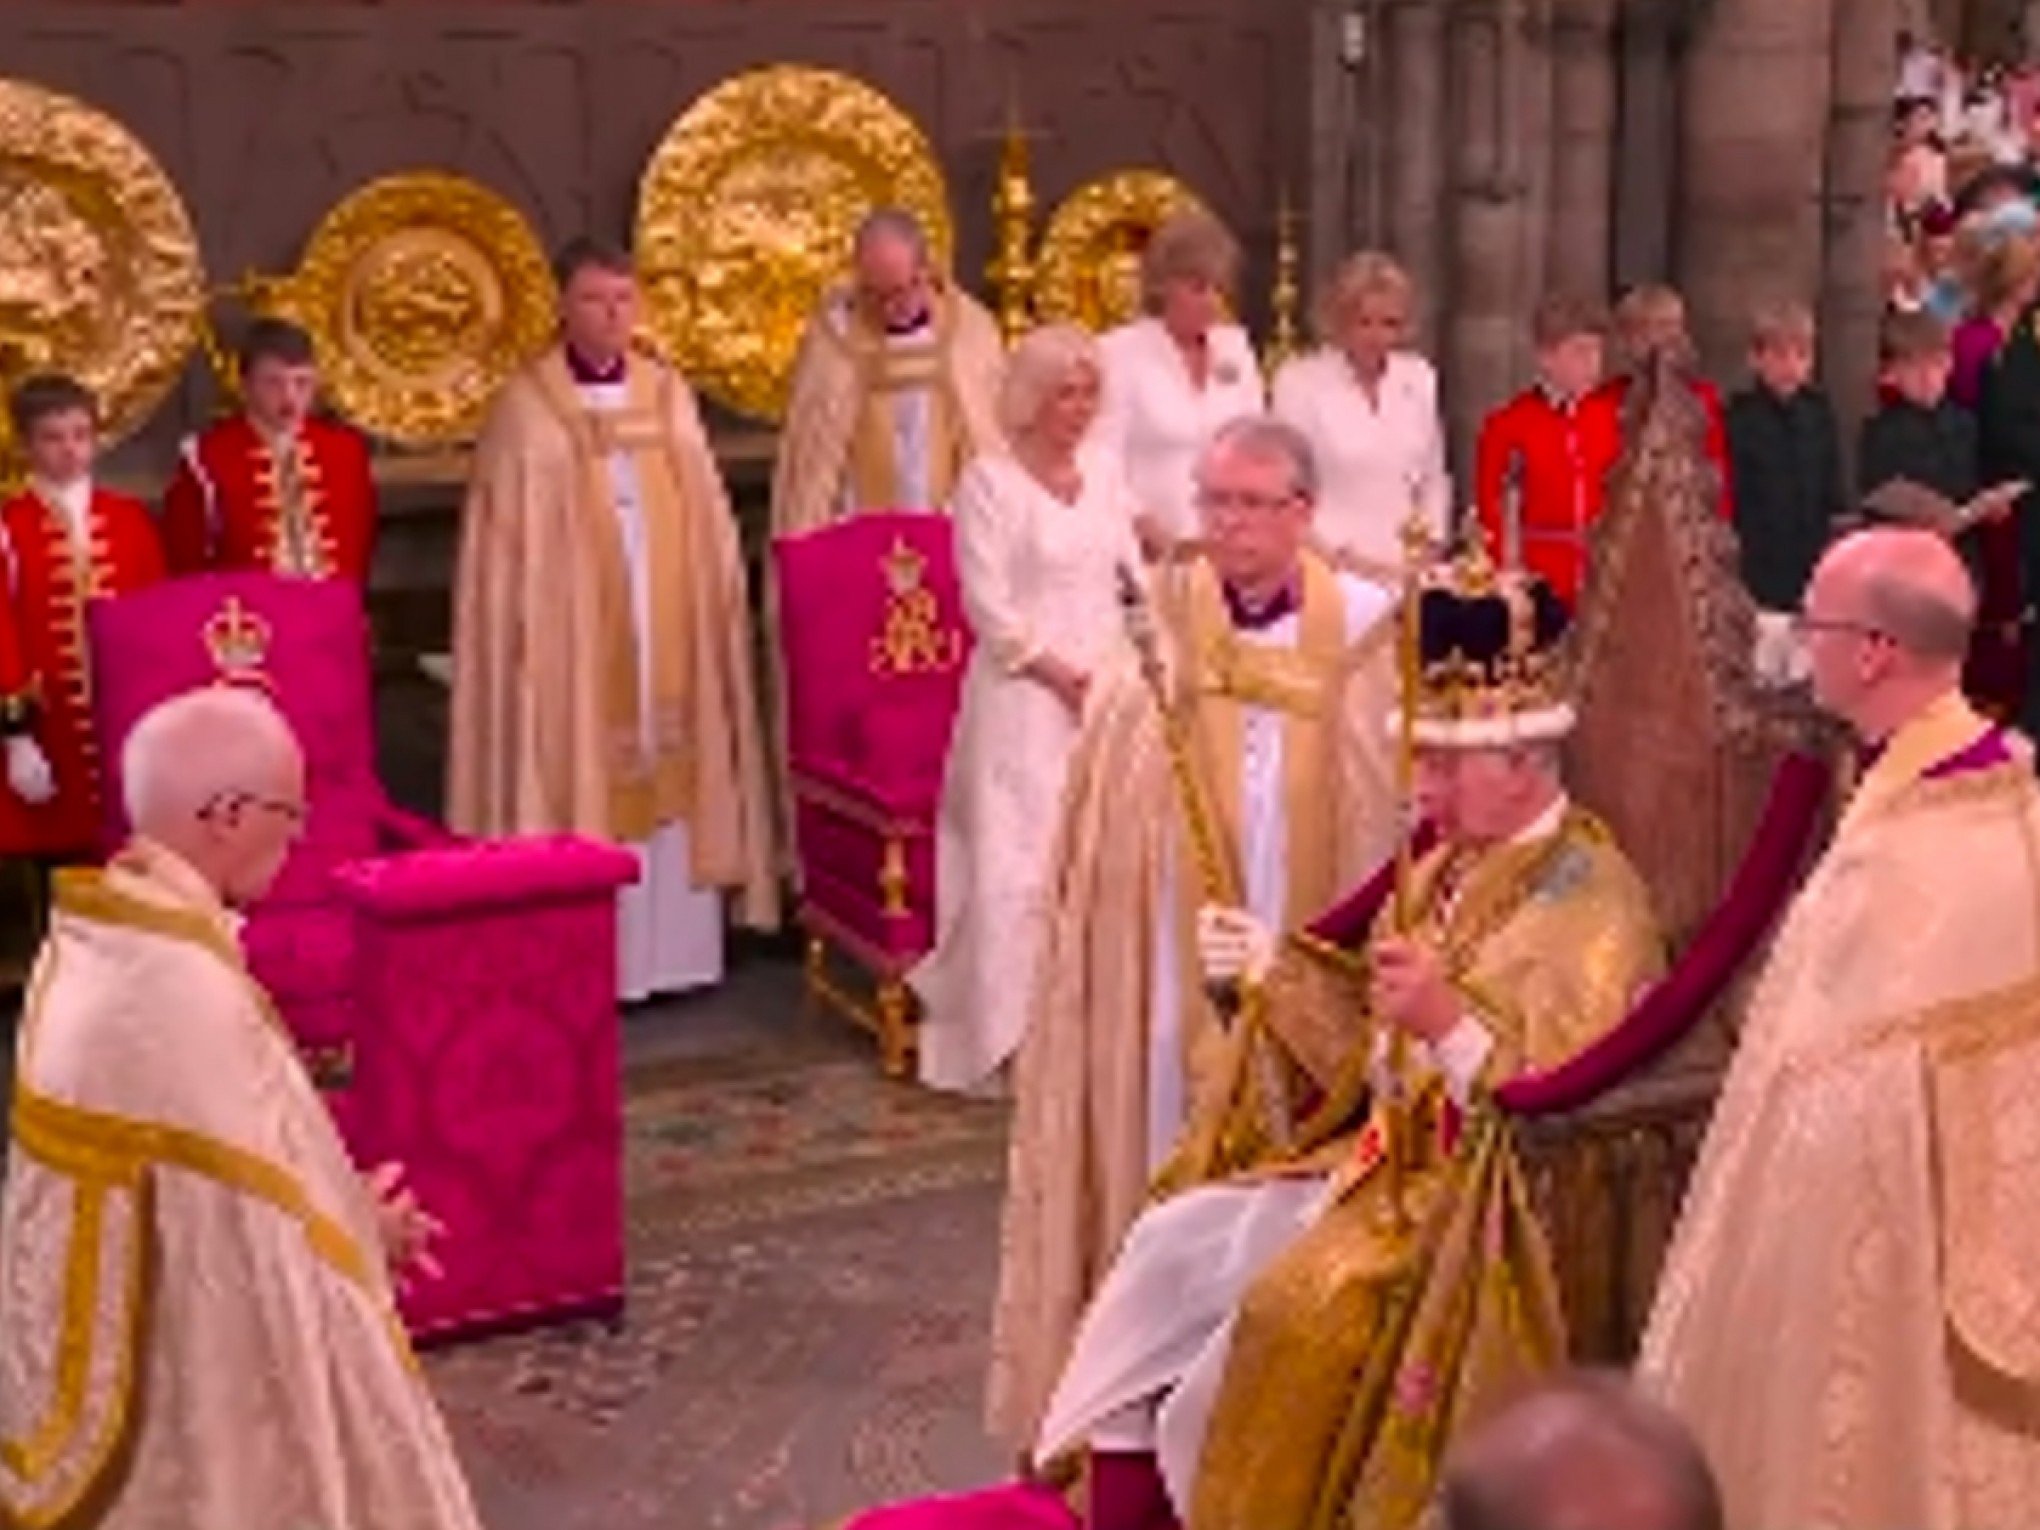 REINO UNIDO: Veja os principais momentos da coroação do rei Charles III